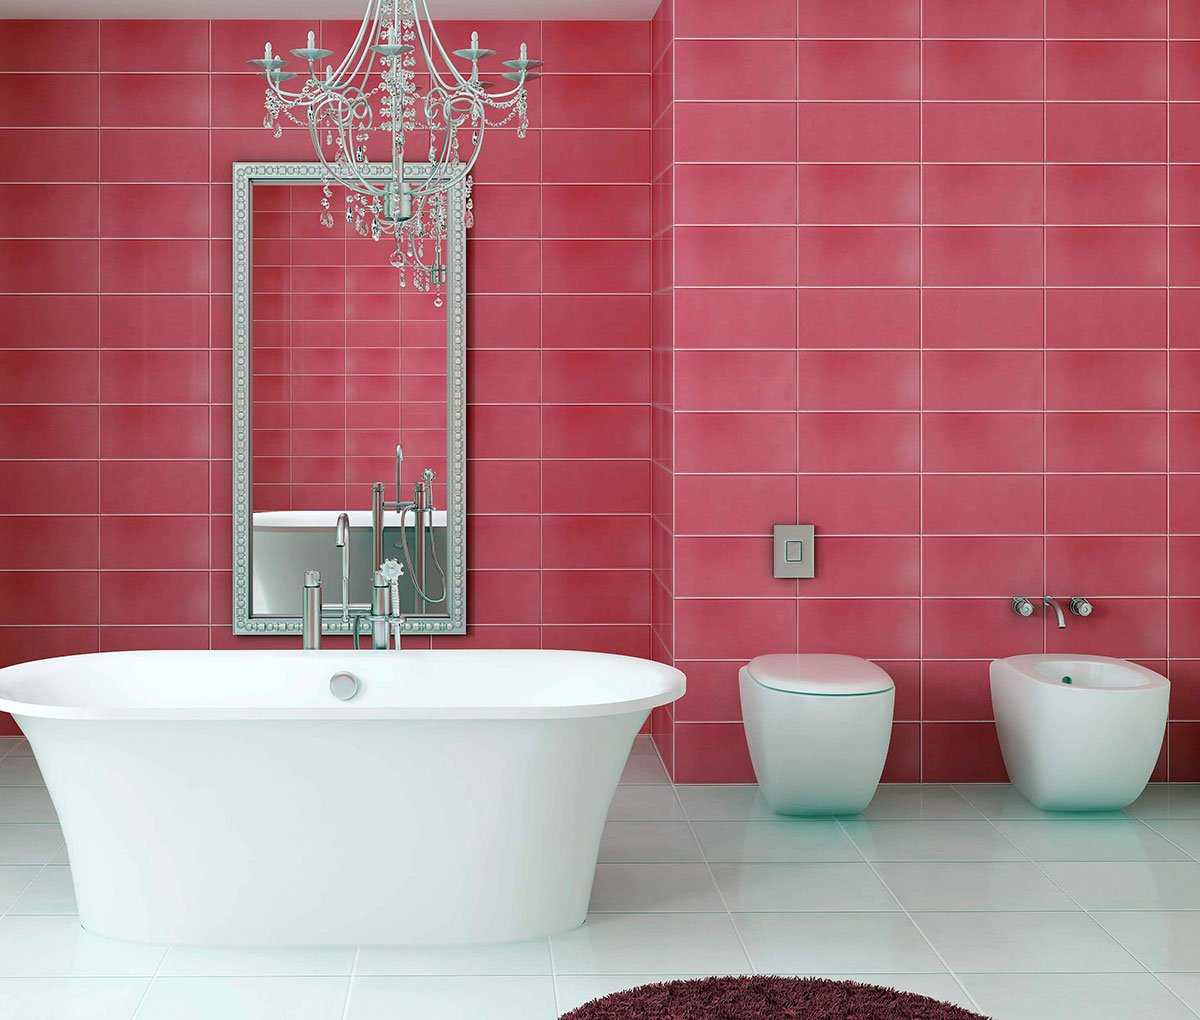 مزيج من اللون الوردي الفاتح في تصميم غرفة النوم مع ألوان أخرى